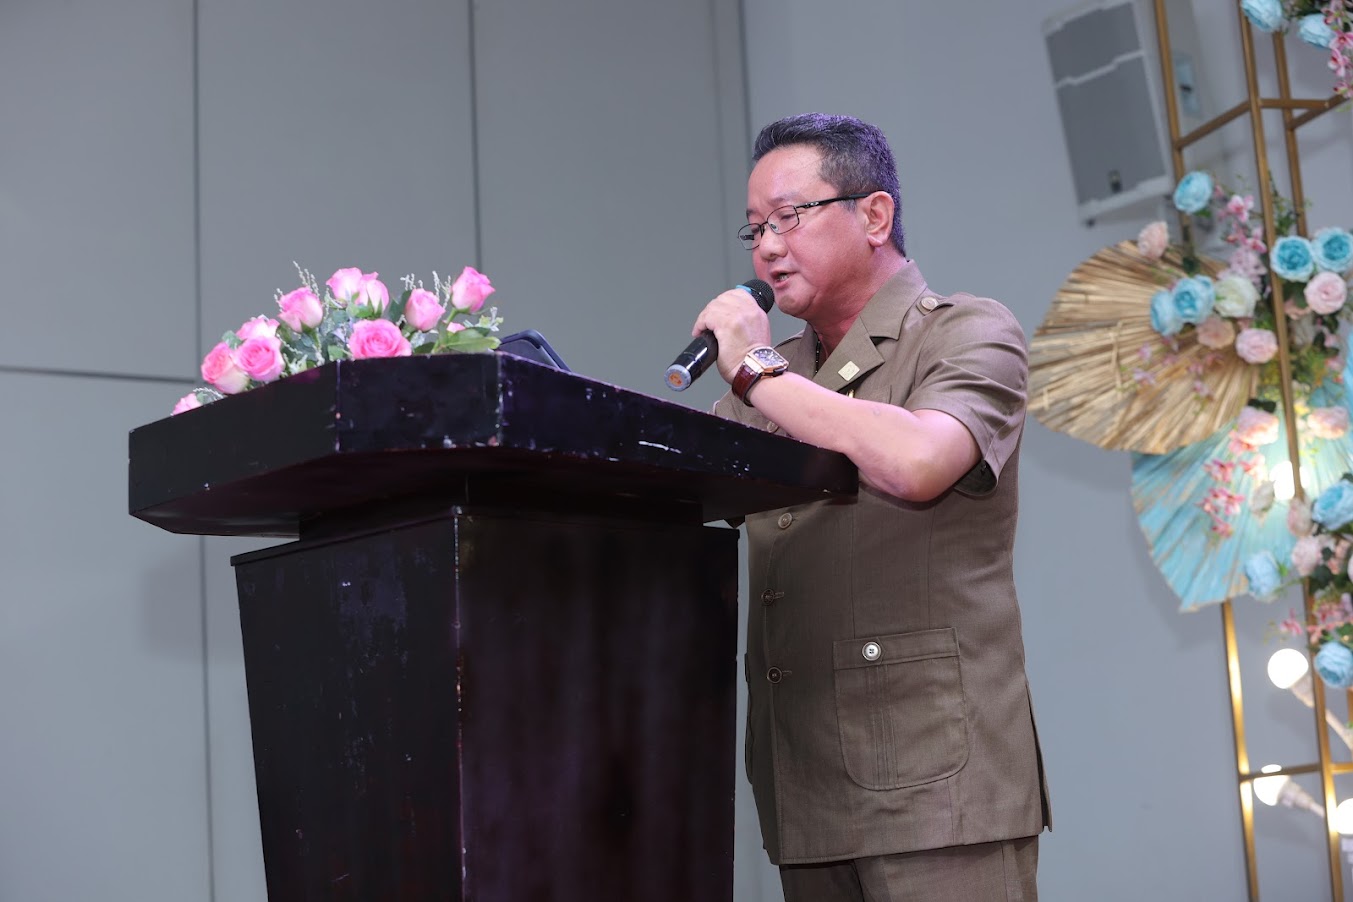 Tiến sỹ. Nhà báo – Luật gia Hồ Minh Sơn, Viện trưởng, Viện Nghiên cứu Thị trường – Truyền thông Quốc tế (IMRIC) phát biểu tại buổi họp báo.